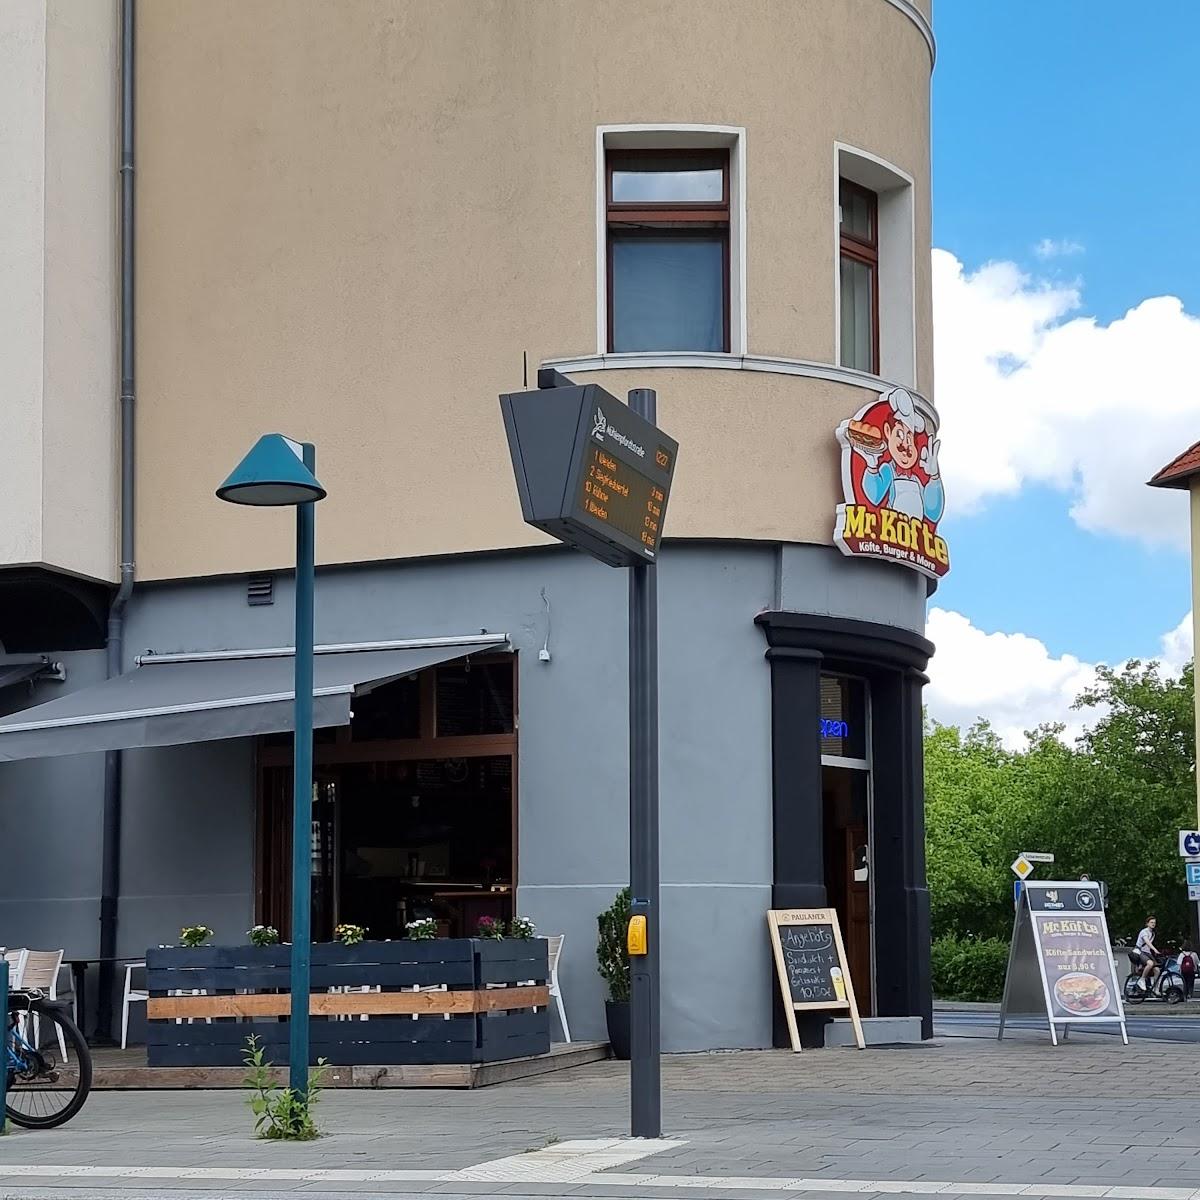 Restaurant "Mr. Köfte" in Braunschweig